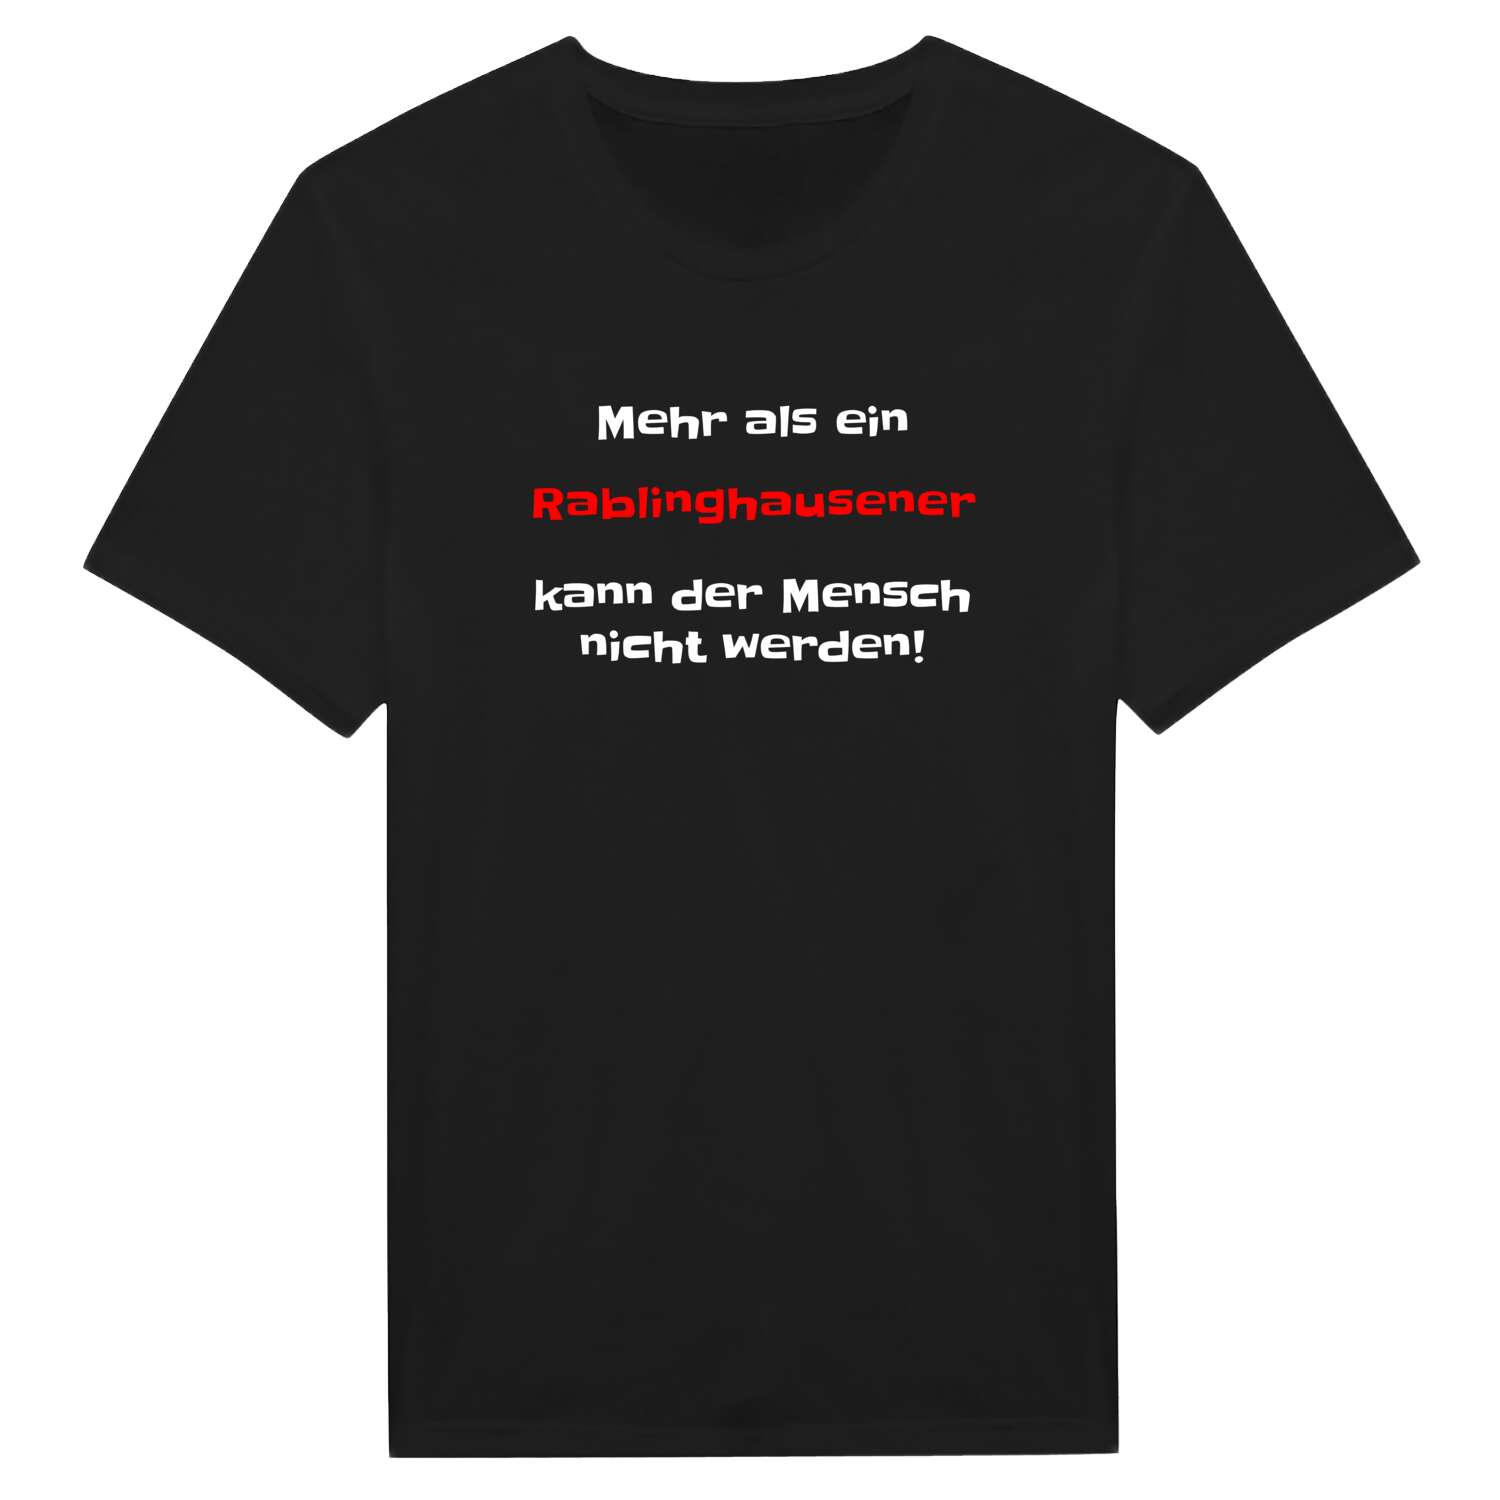 Rablinghausen T-Shirt »Mehr als ein«